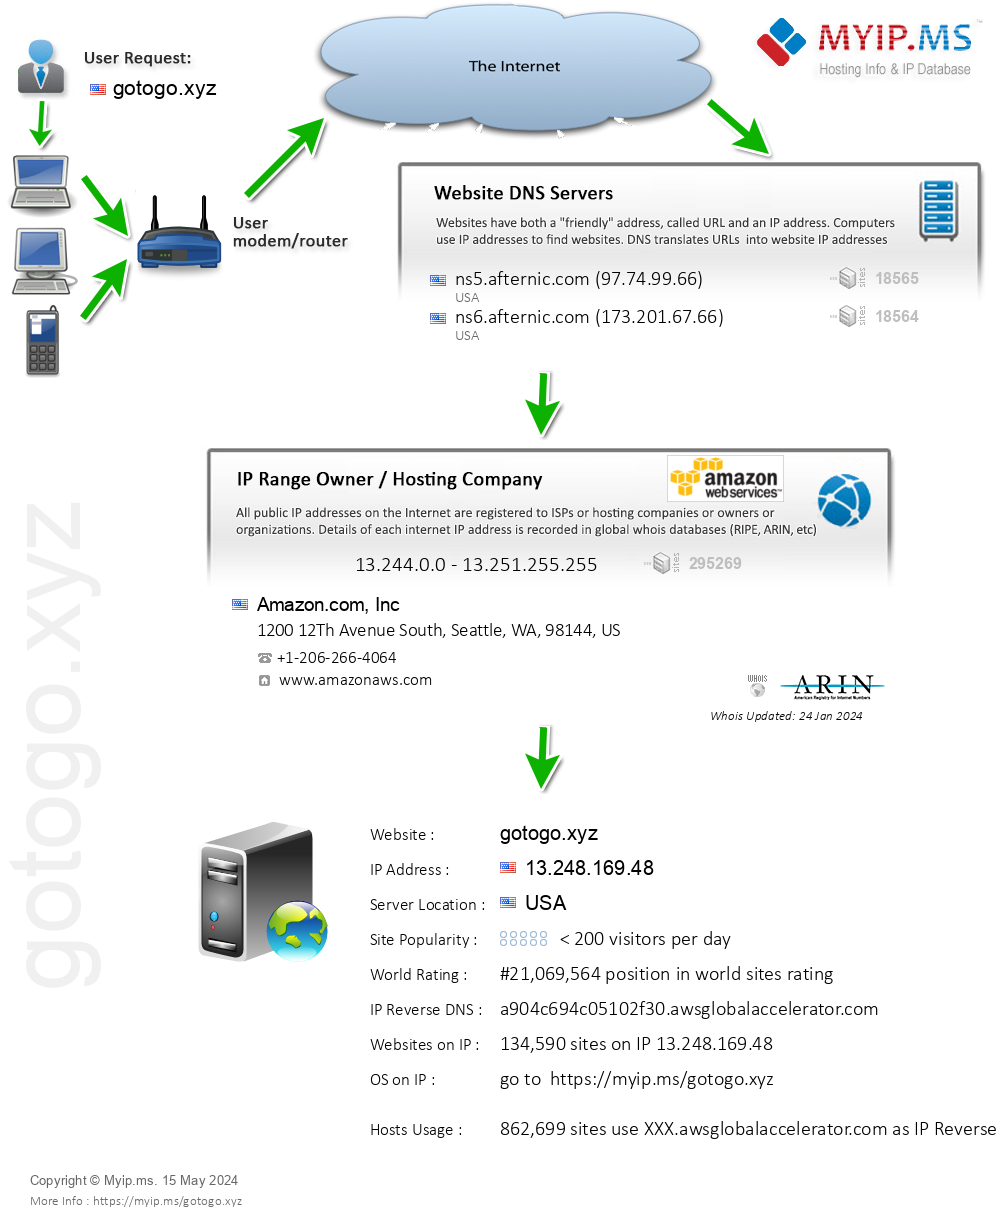 Gotogo.xyz - Website Hosting Visual IP Diagram